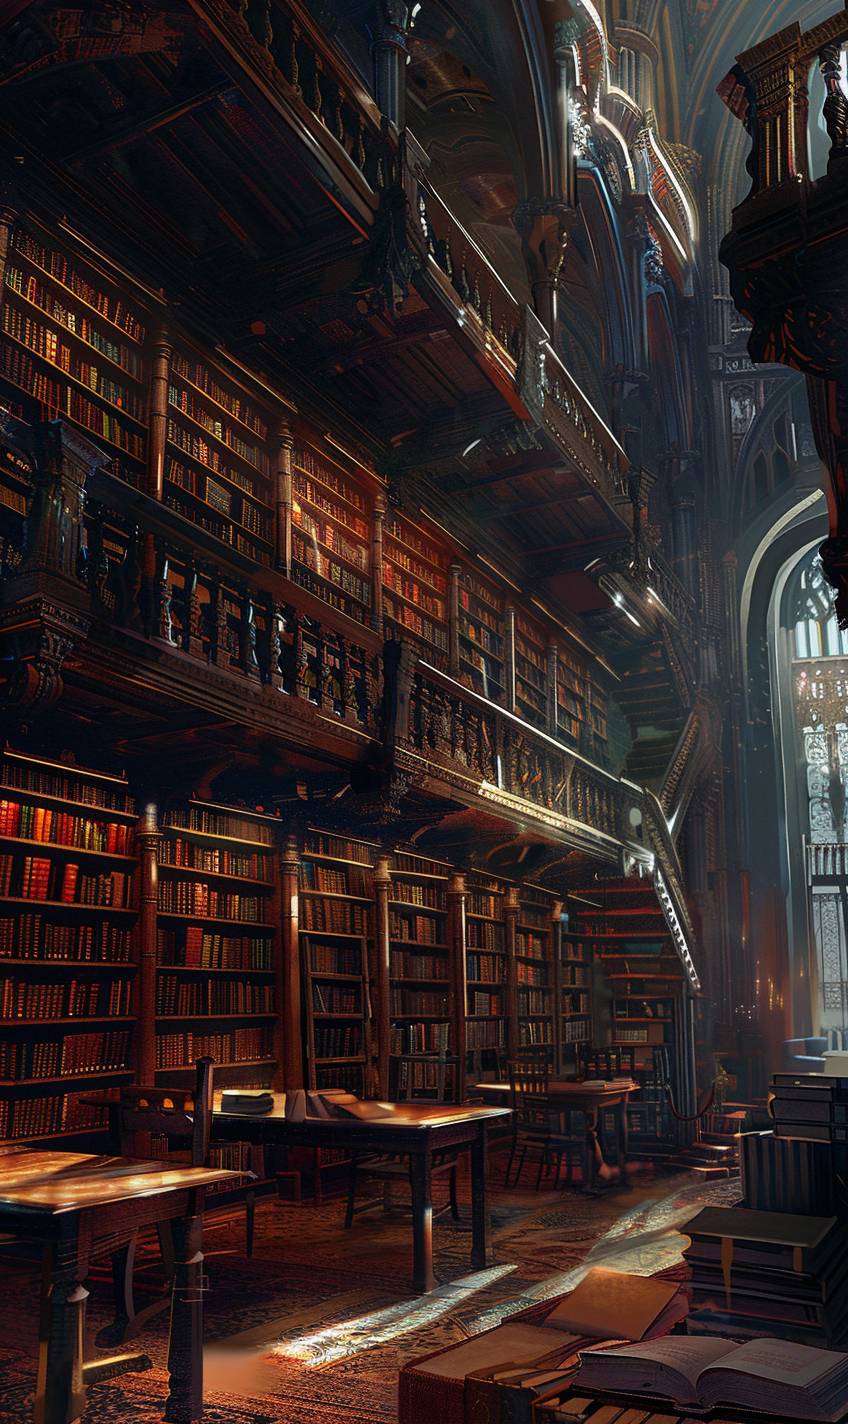 Sparthのスタイルのように、古代の書籍でいっぱいの魔法の図書館